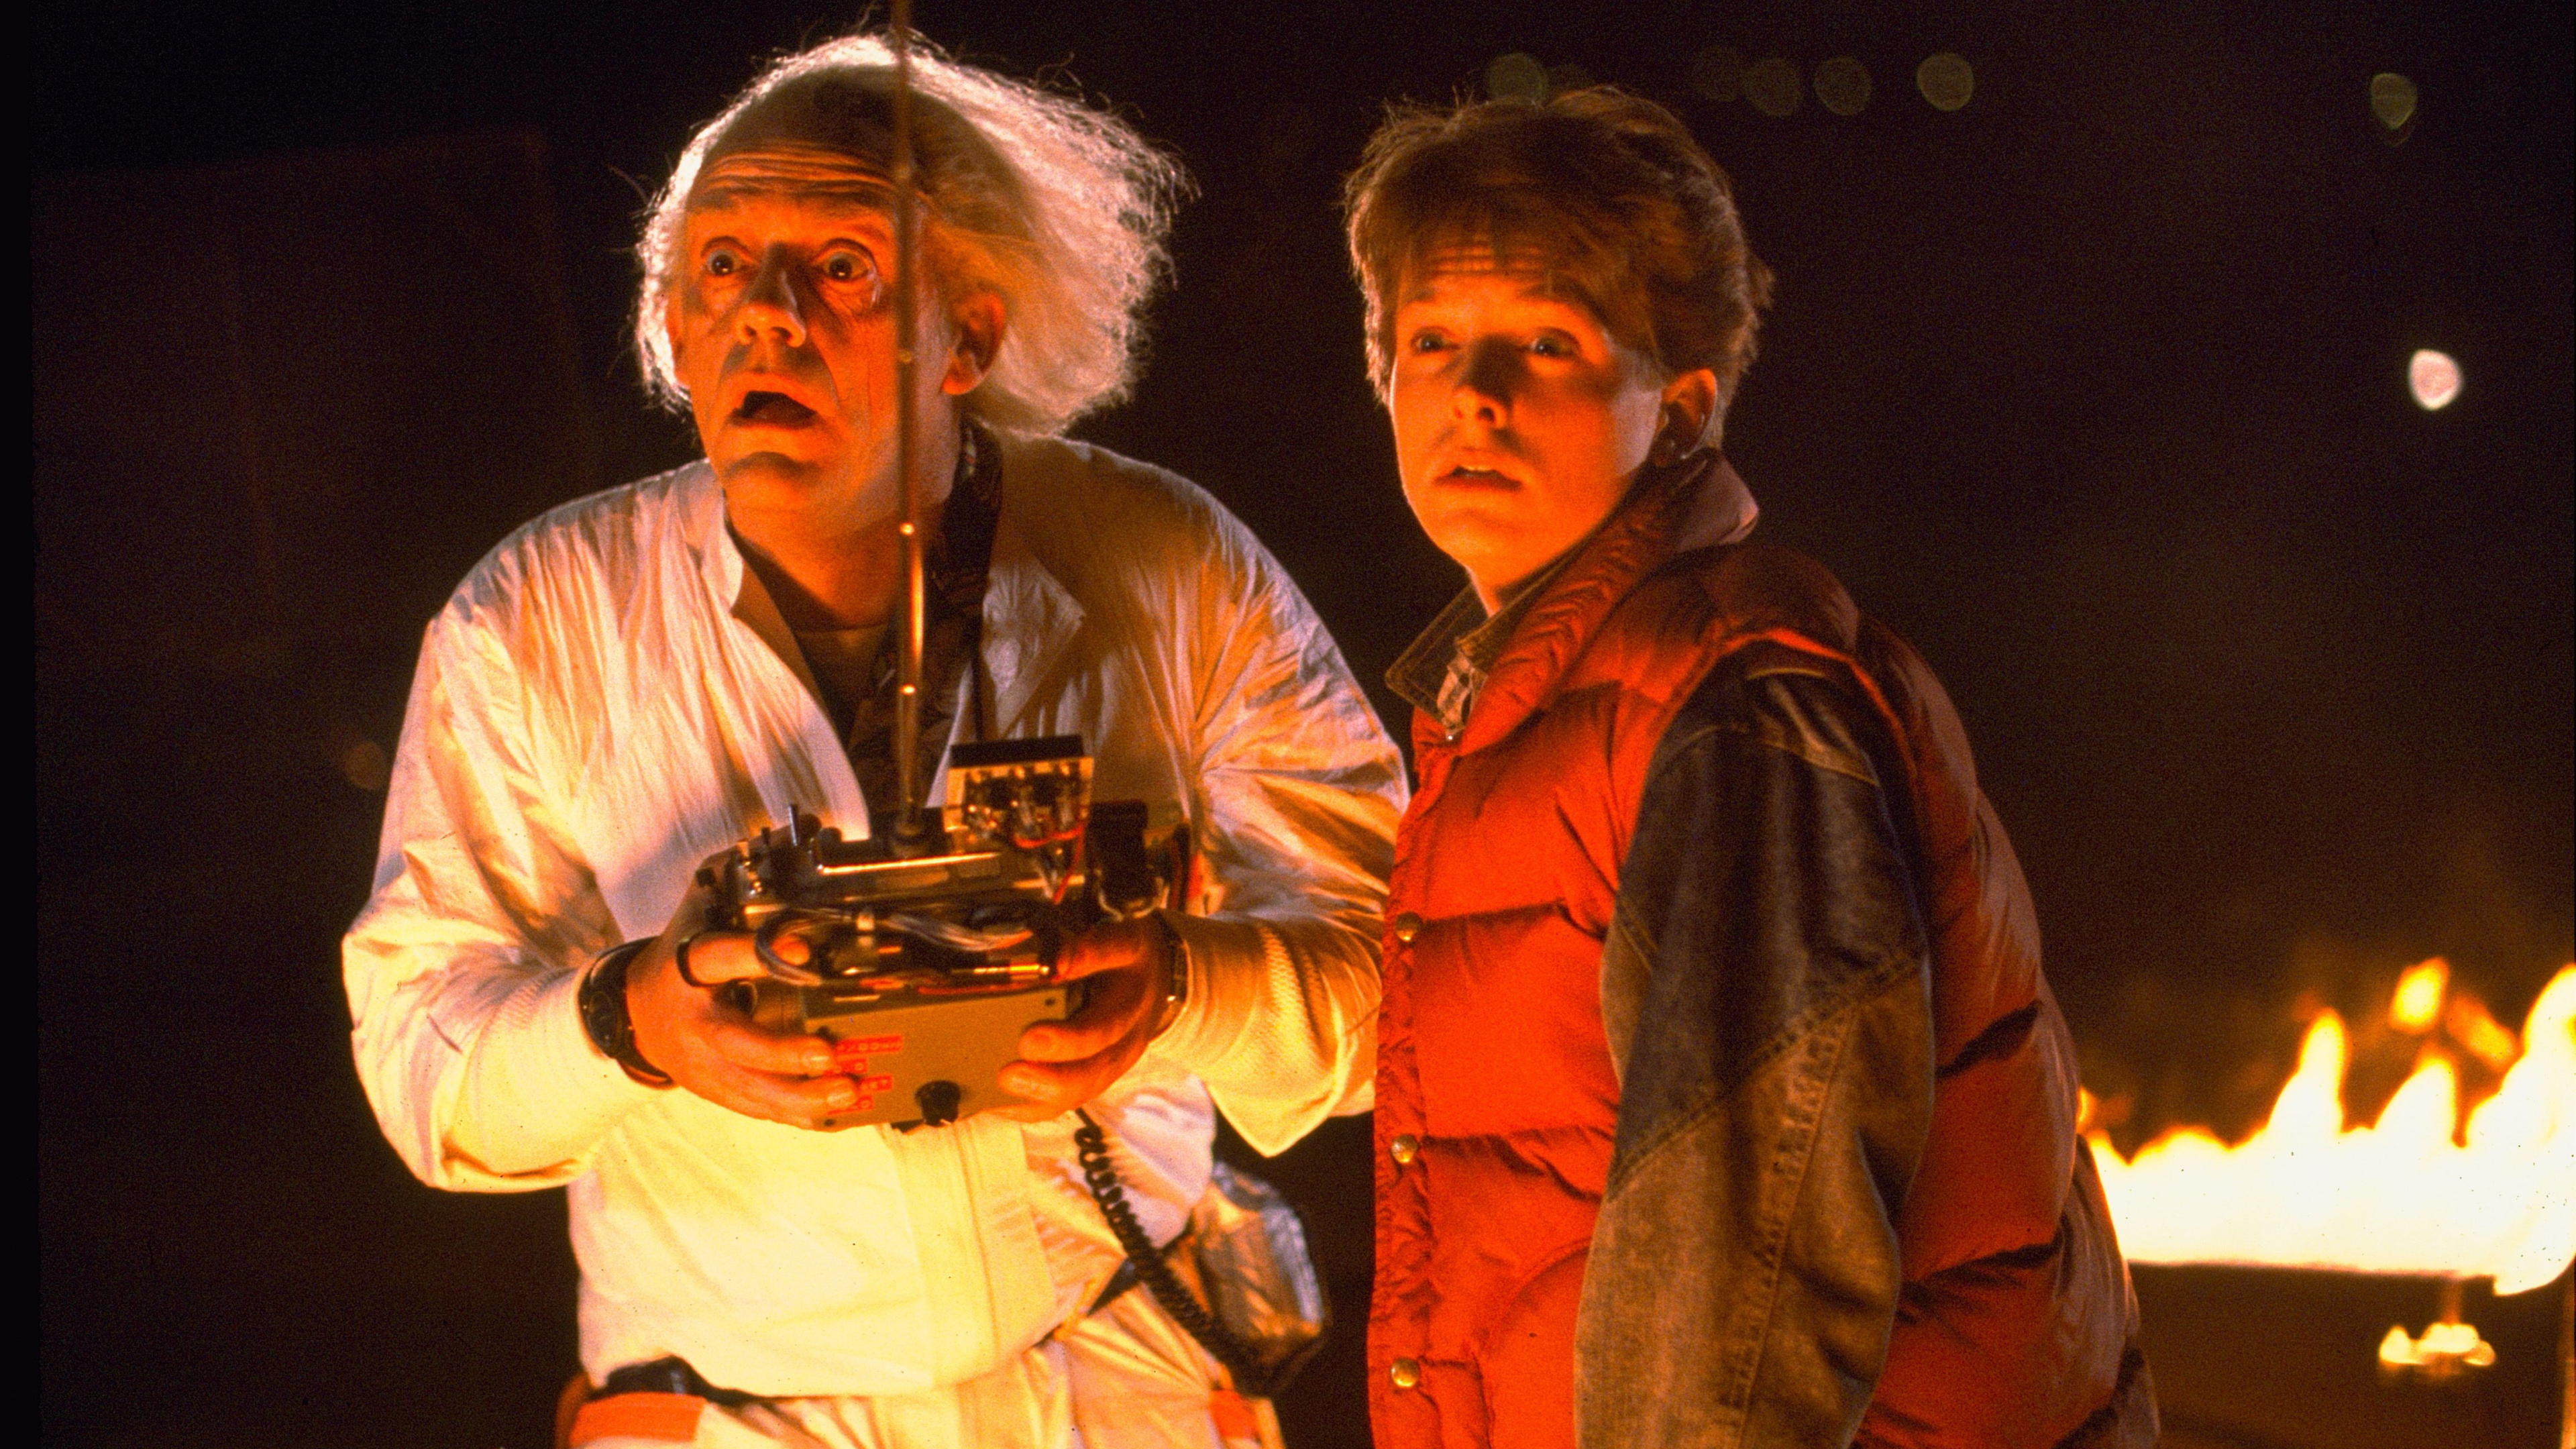 Cine - Doc y Marty, de 'Regreso al futuro', han vuelto